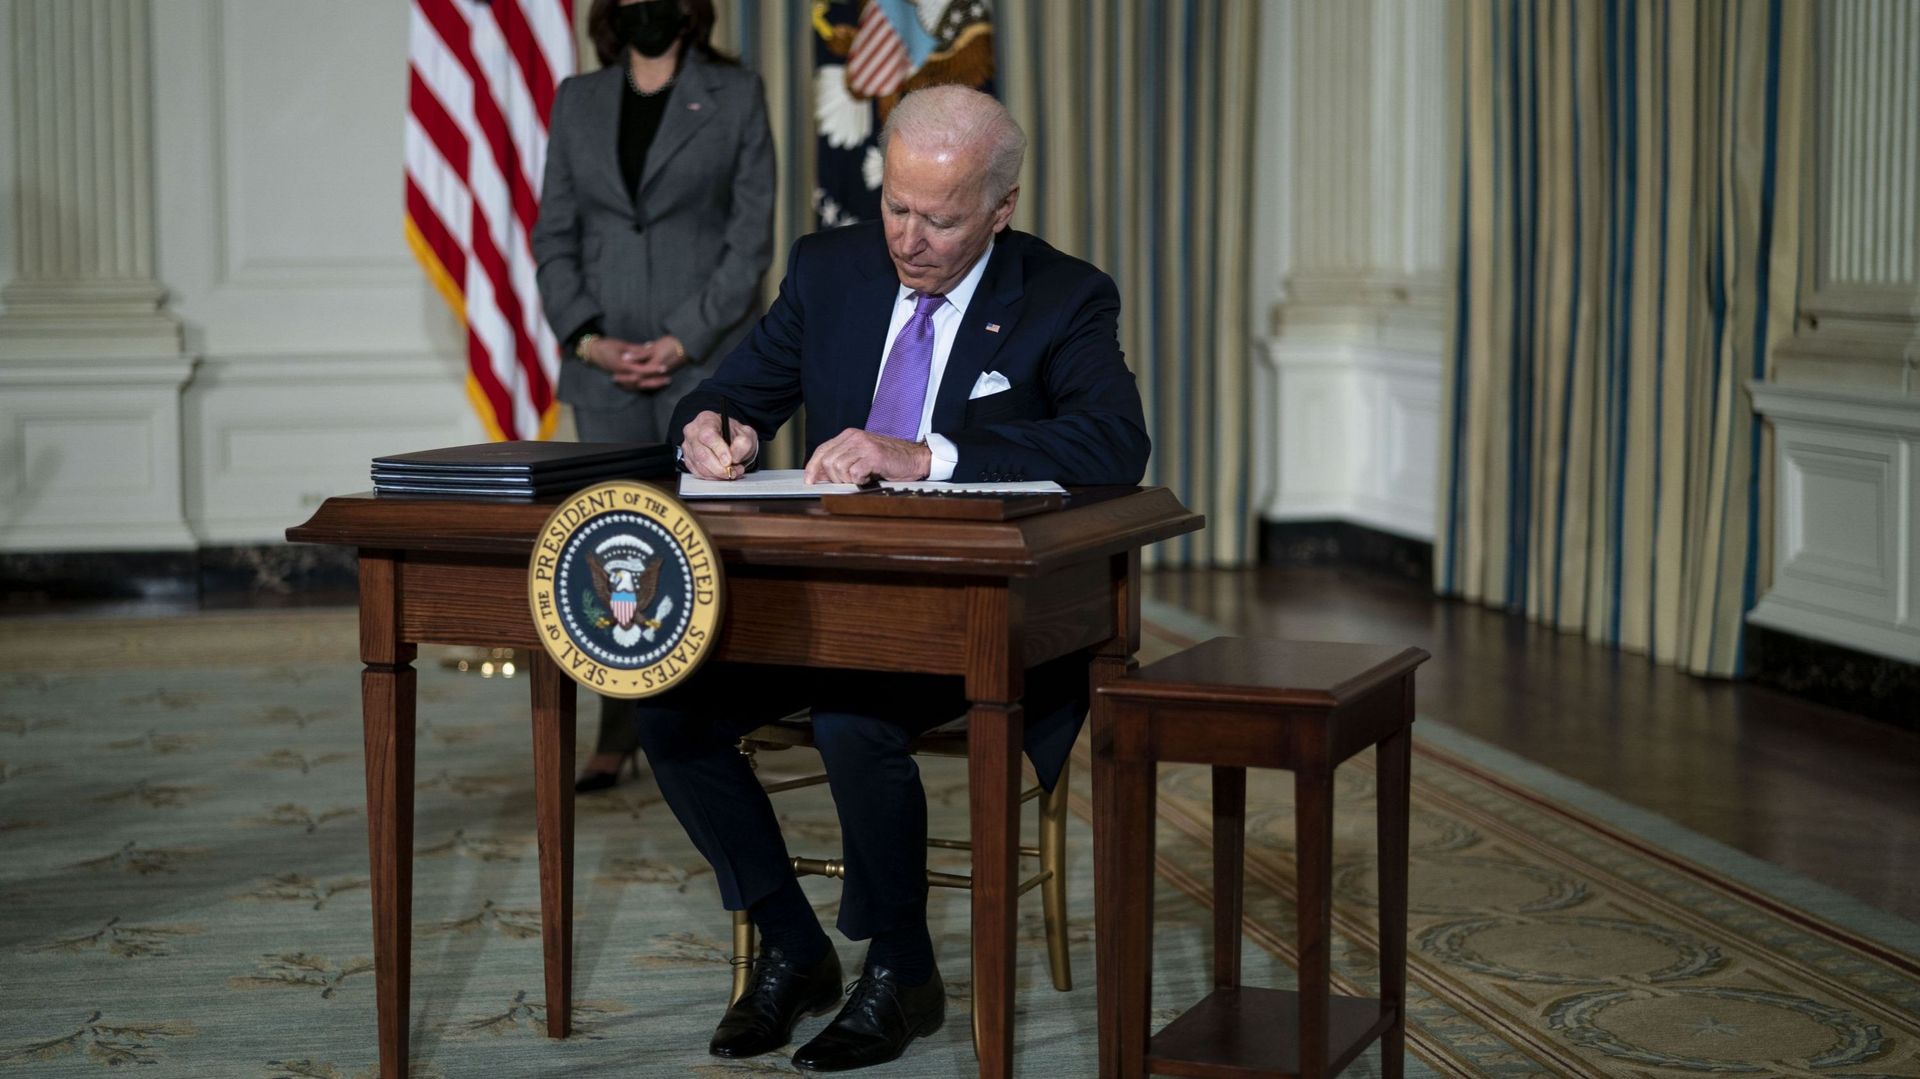 Joe Biden estime "qu'il est temps d'agir contre le racisme" et adopte des mesures